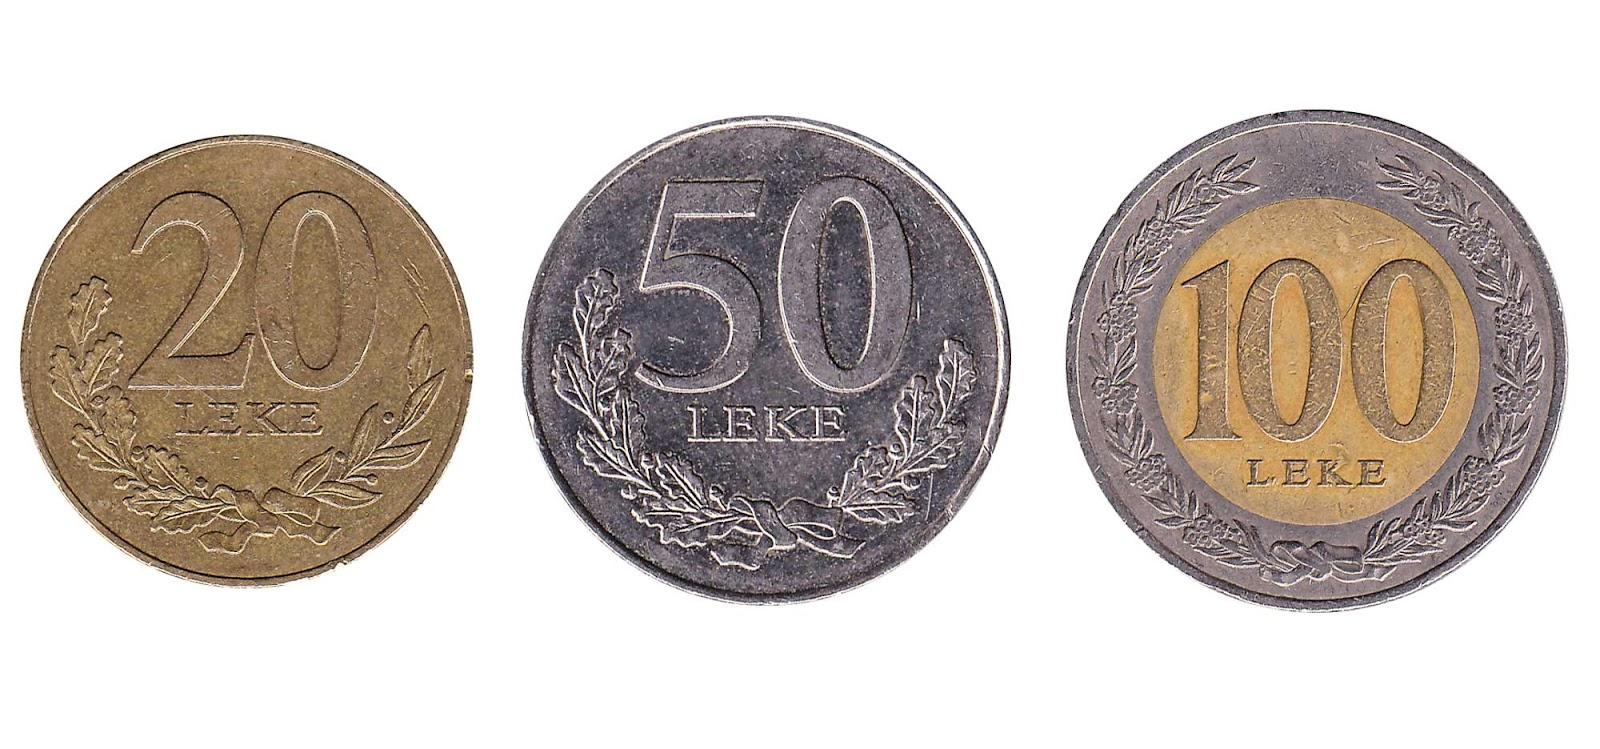 Albanian leke coins